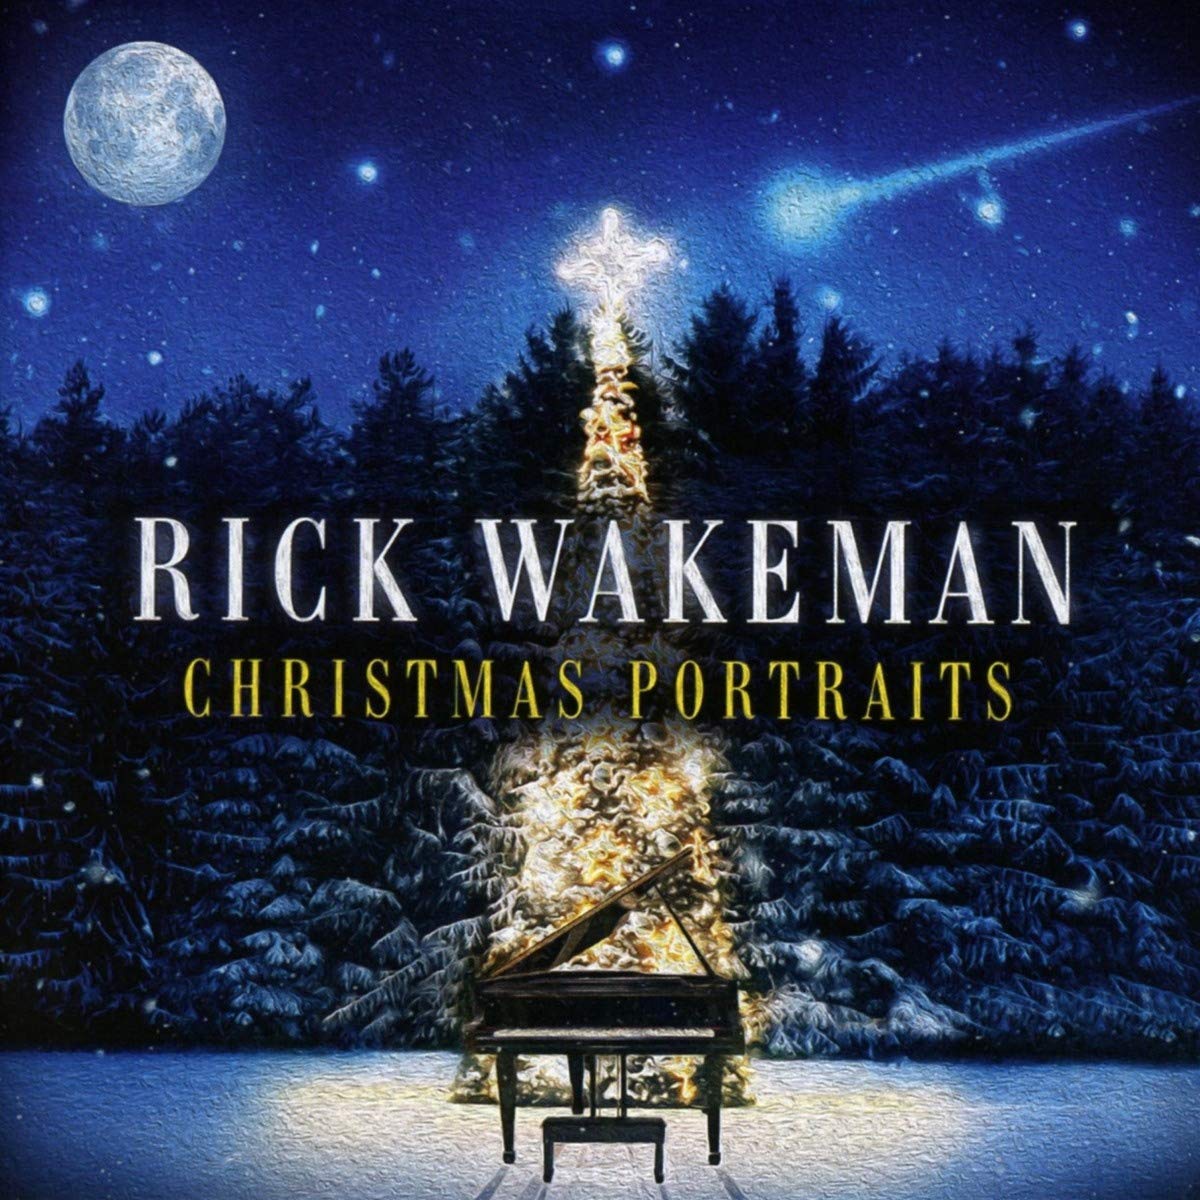 Rick Wakeman Christmas